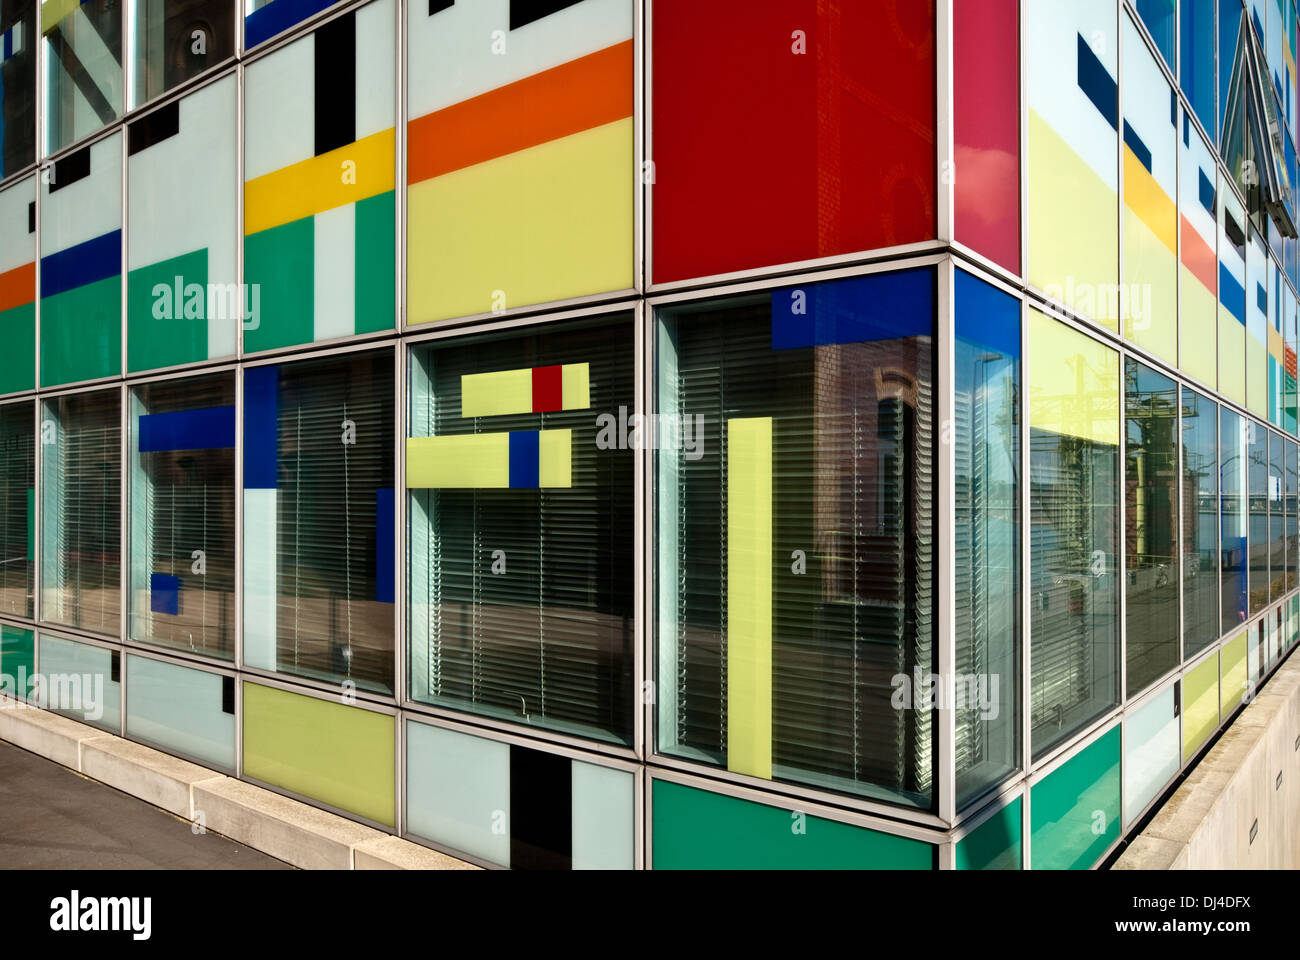 colorful facade Stock Photo